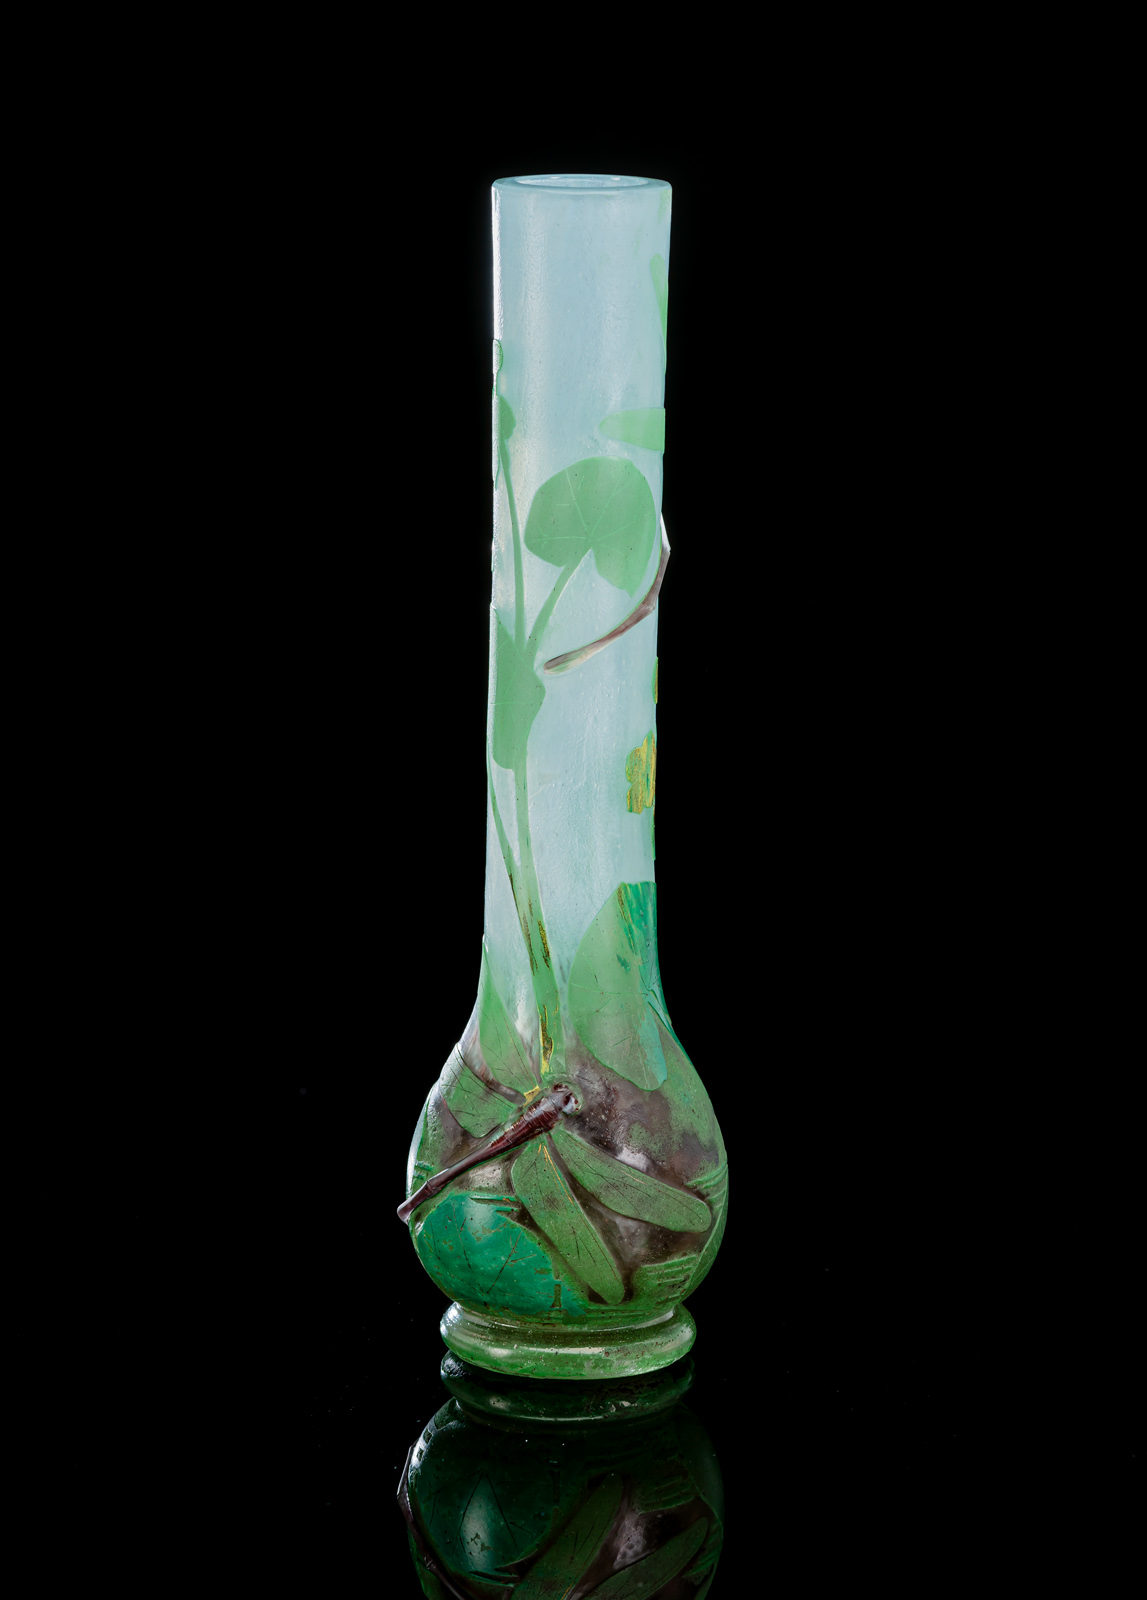 Farbloses Glas mit hellblauen, grünen und manganfarbenen Pulvereinschmelzungen, grün überfangen. Geätzter Dekor von Sumpfblumen, zwei aufgelegte Libellen. Am Boden Ritzsignatur 